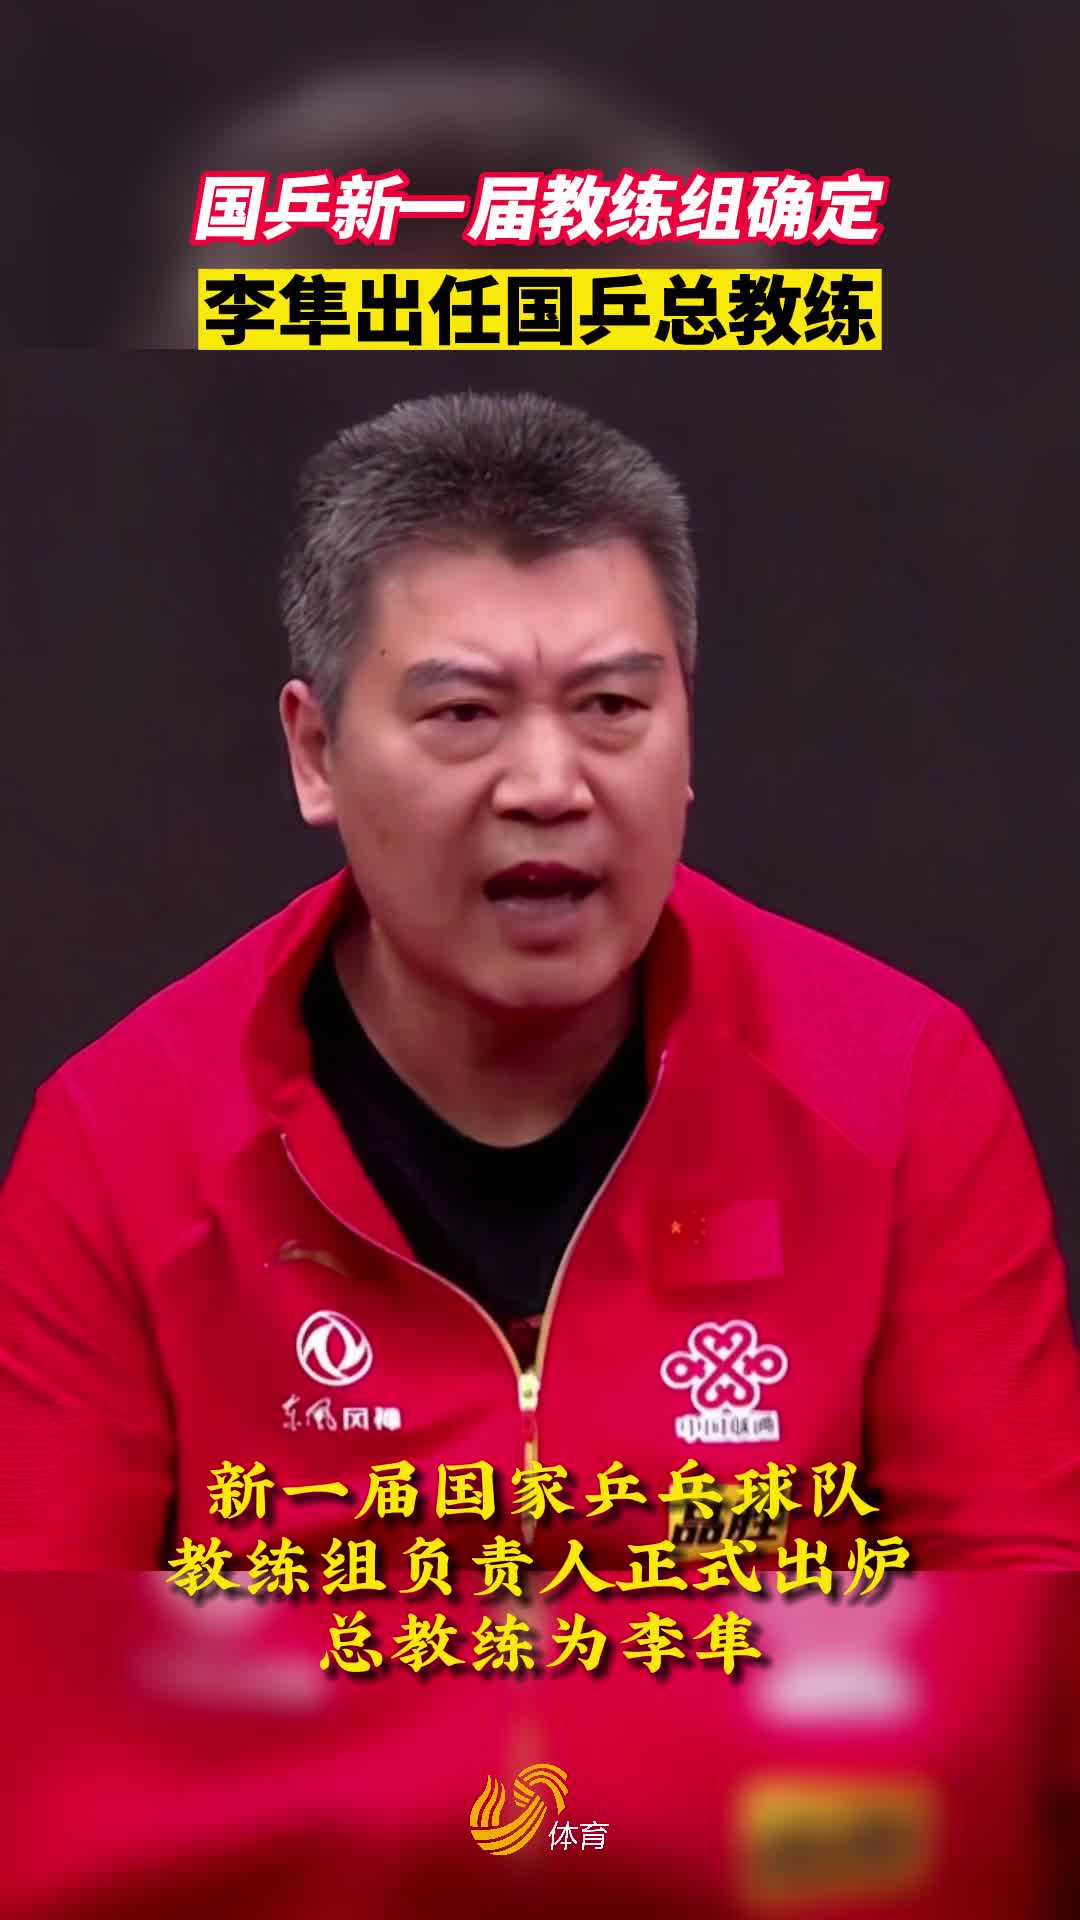 李隼当选国乒总教练 王皓和马琳分别挂帅男女队